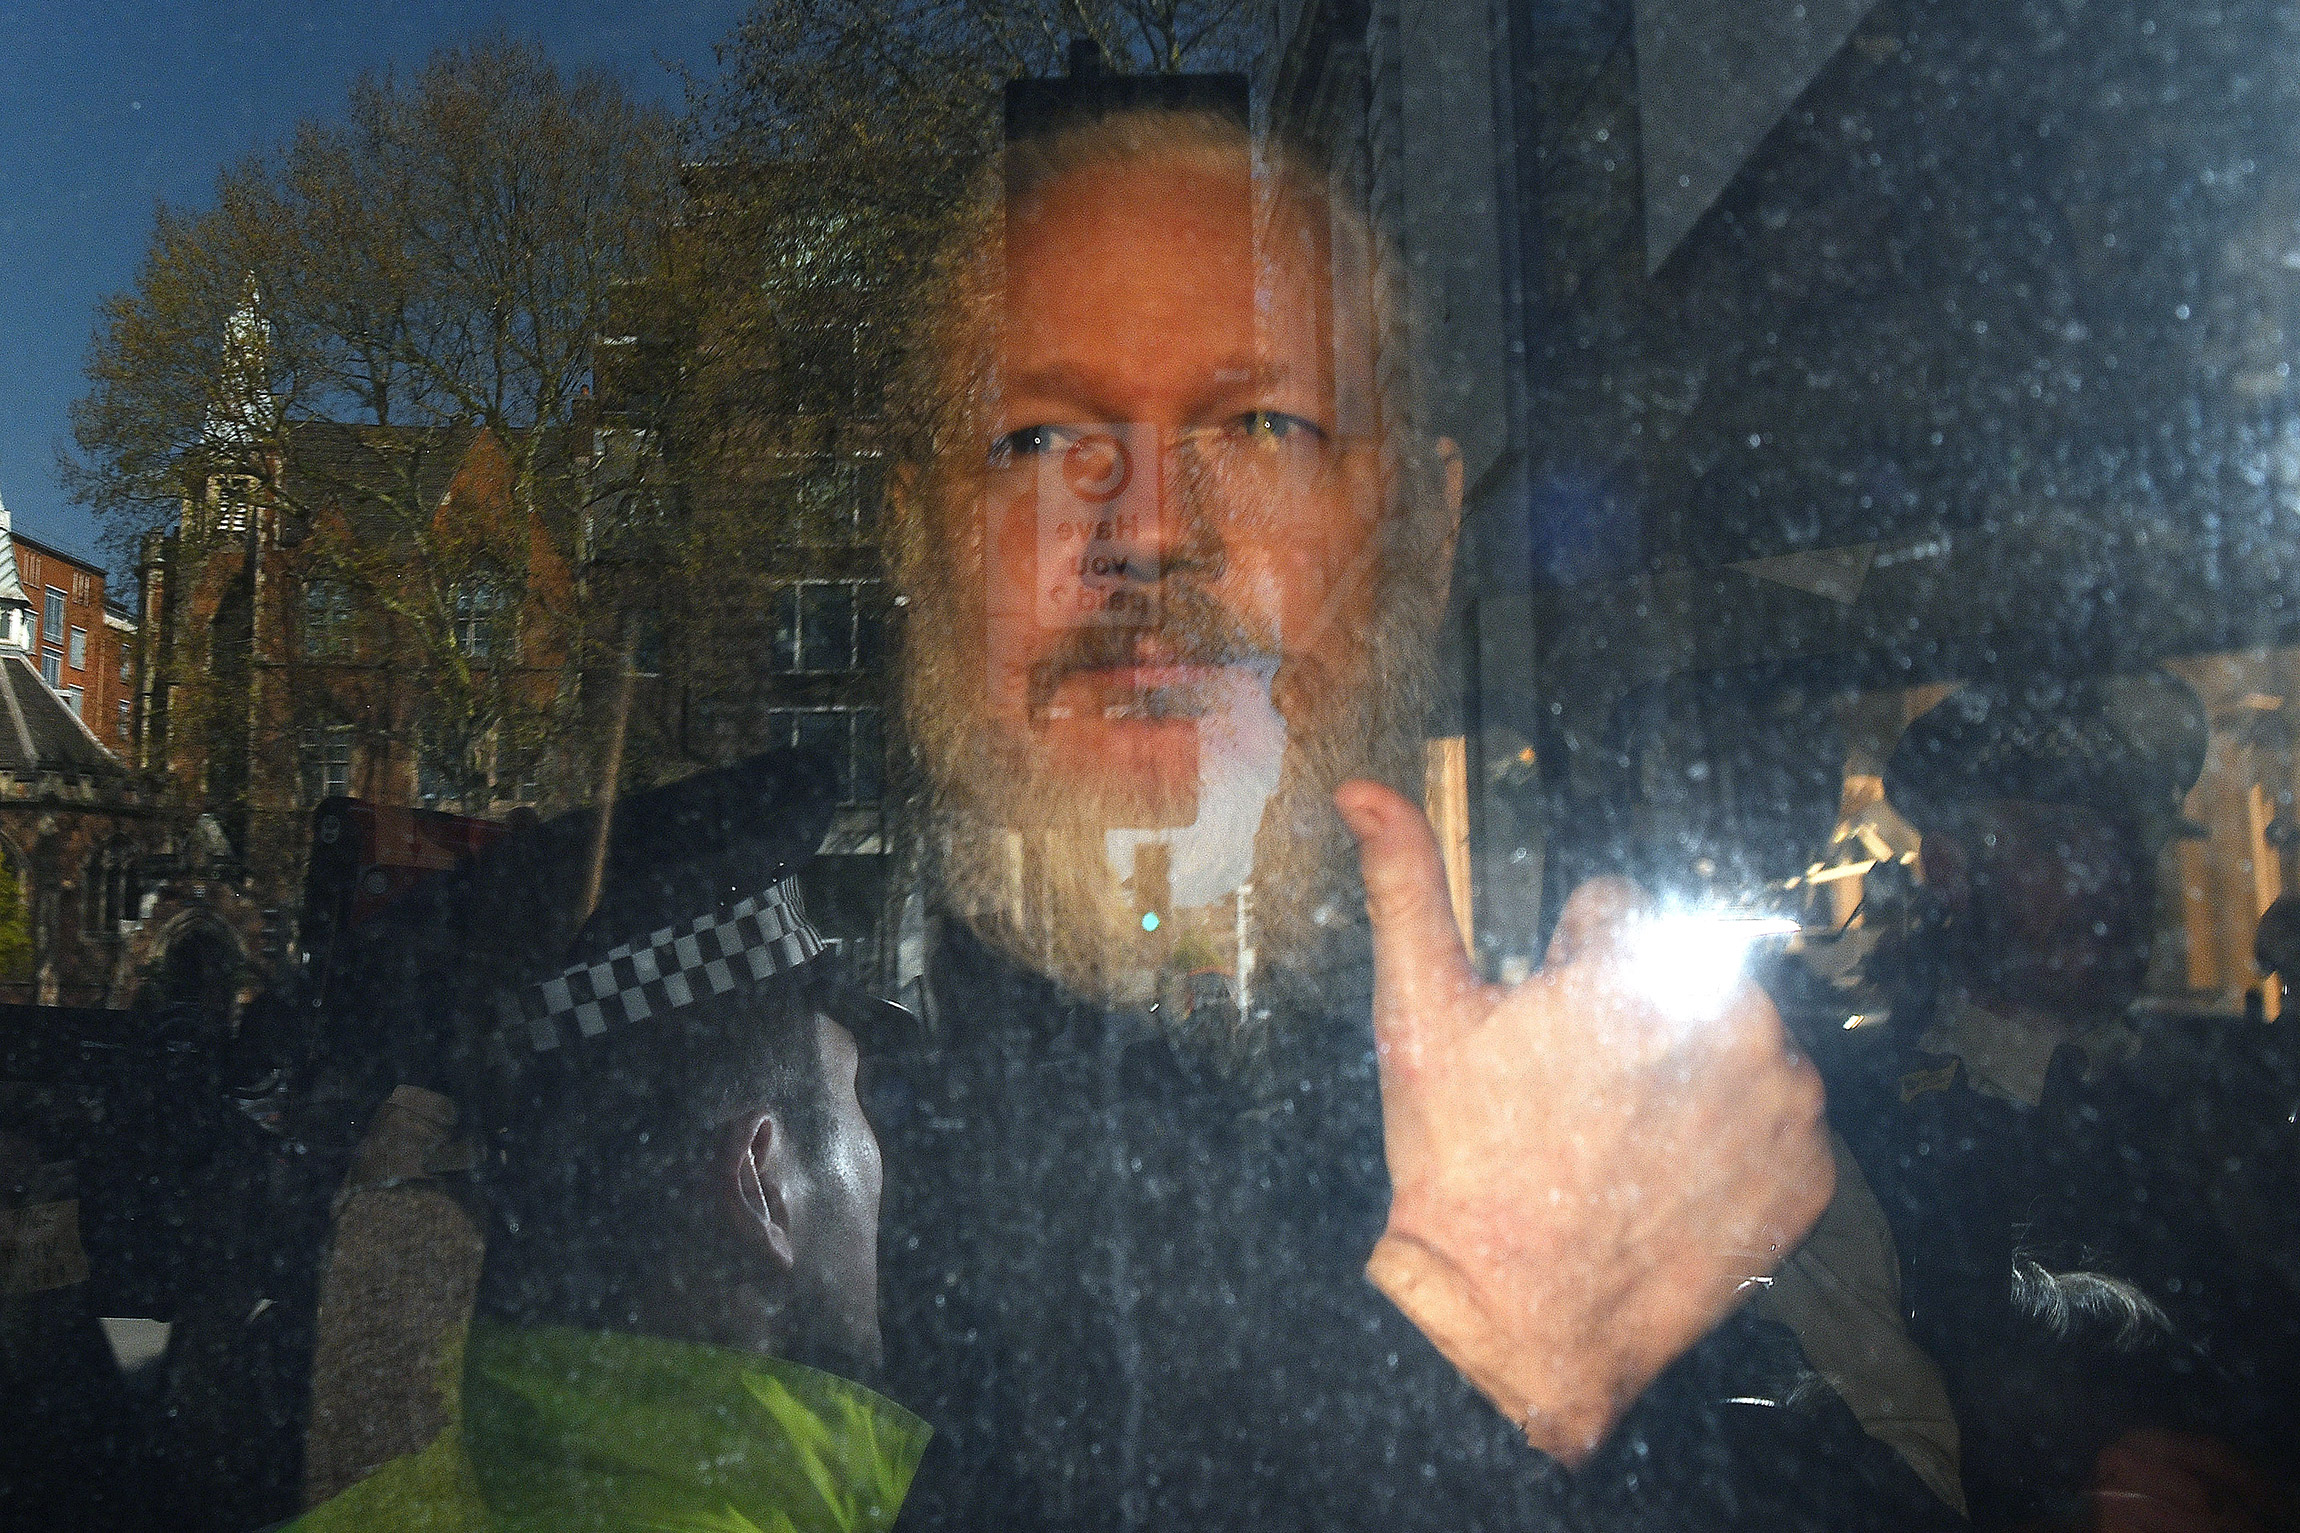 11 апреля в посольстве Эквадора в Лондоне задержали​ основателя WikiLeaks Джулиана Ассанжа. В этом здании&nbsp;он прожил семь лет, скрываясь от уголовного преследования: в Швеции его обвинили в сексуальном насилии, а в США&nbsp;&mdash; в публикации секретных документов. В ноябре Швеция закрыла дело об изнасиловании в связи с отсутствием доказательств вины. Он находится в одной из тюрем Лондона, дожидаясь решения об экстрадиции в США